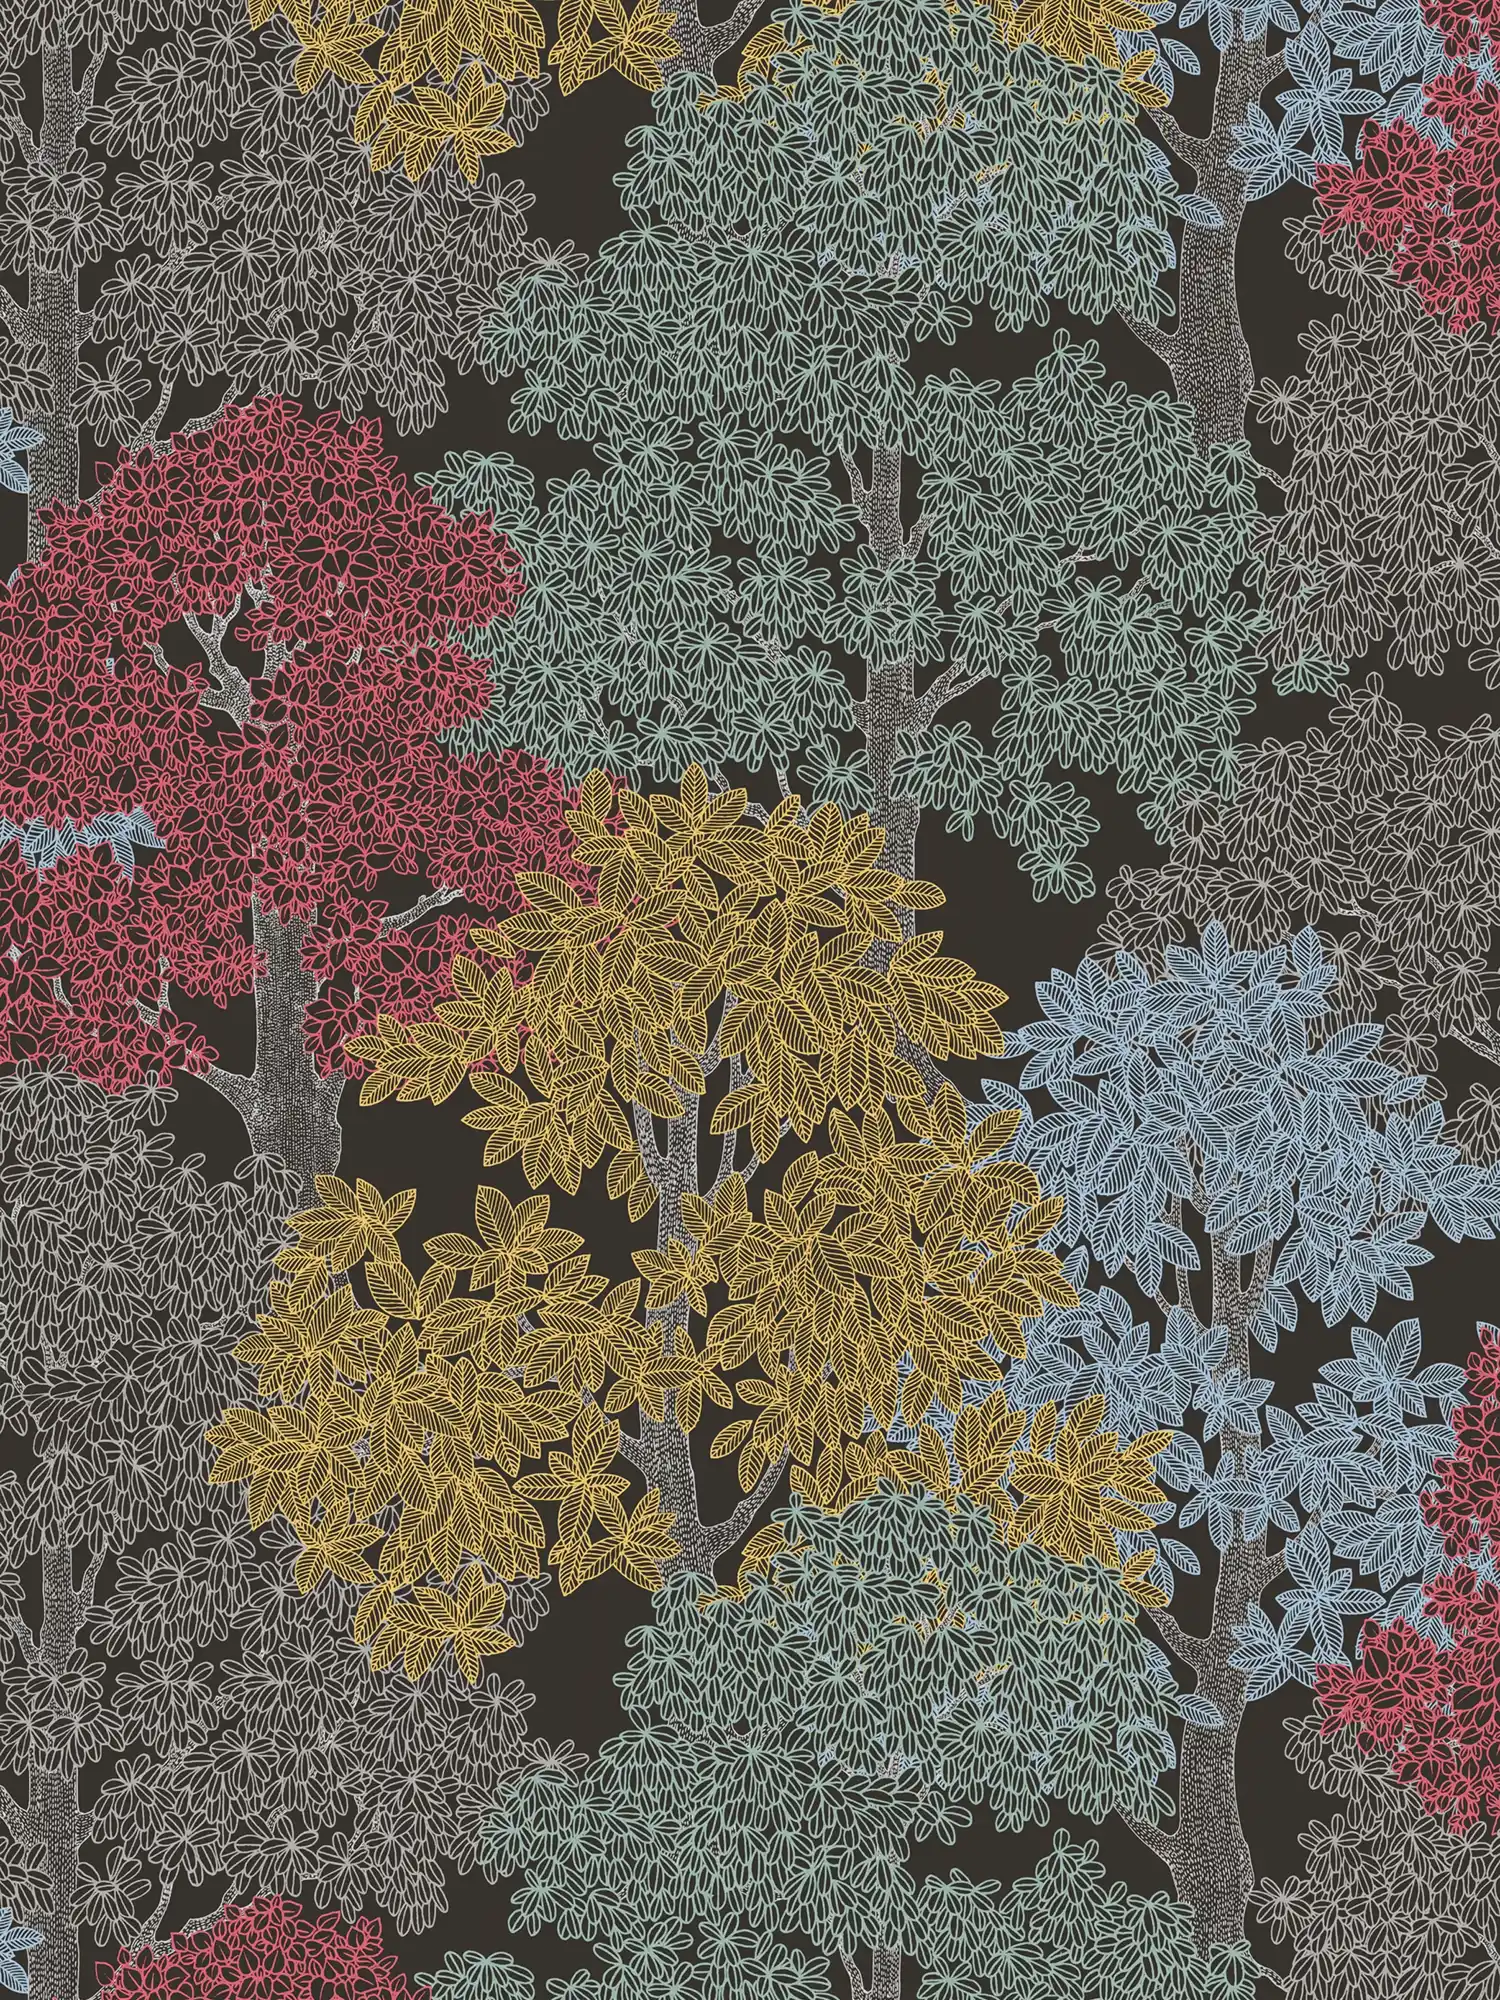             Papel pintado de diseño de bosque en estilo de dibujo con copas de árboles - marrón, negro, amarillo
        